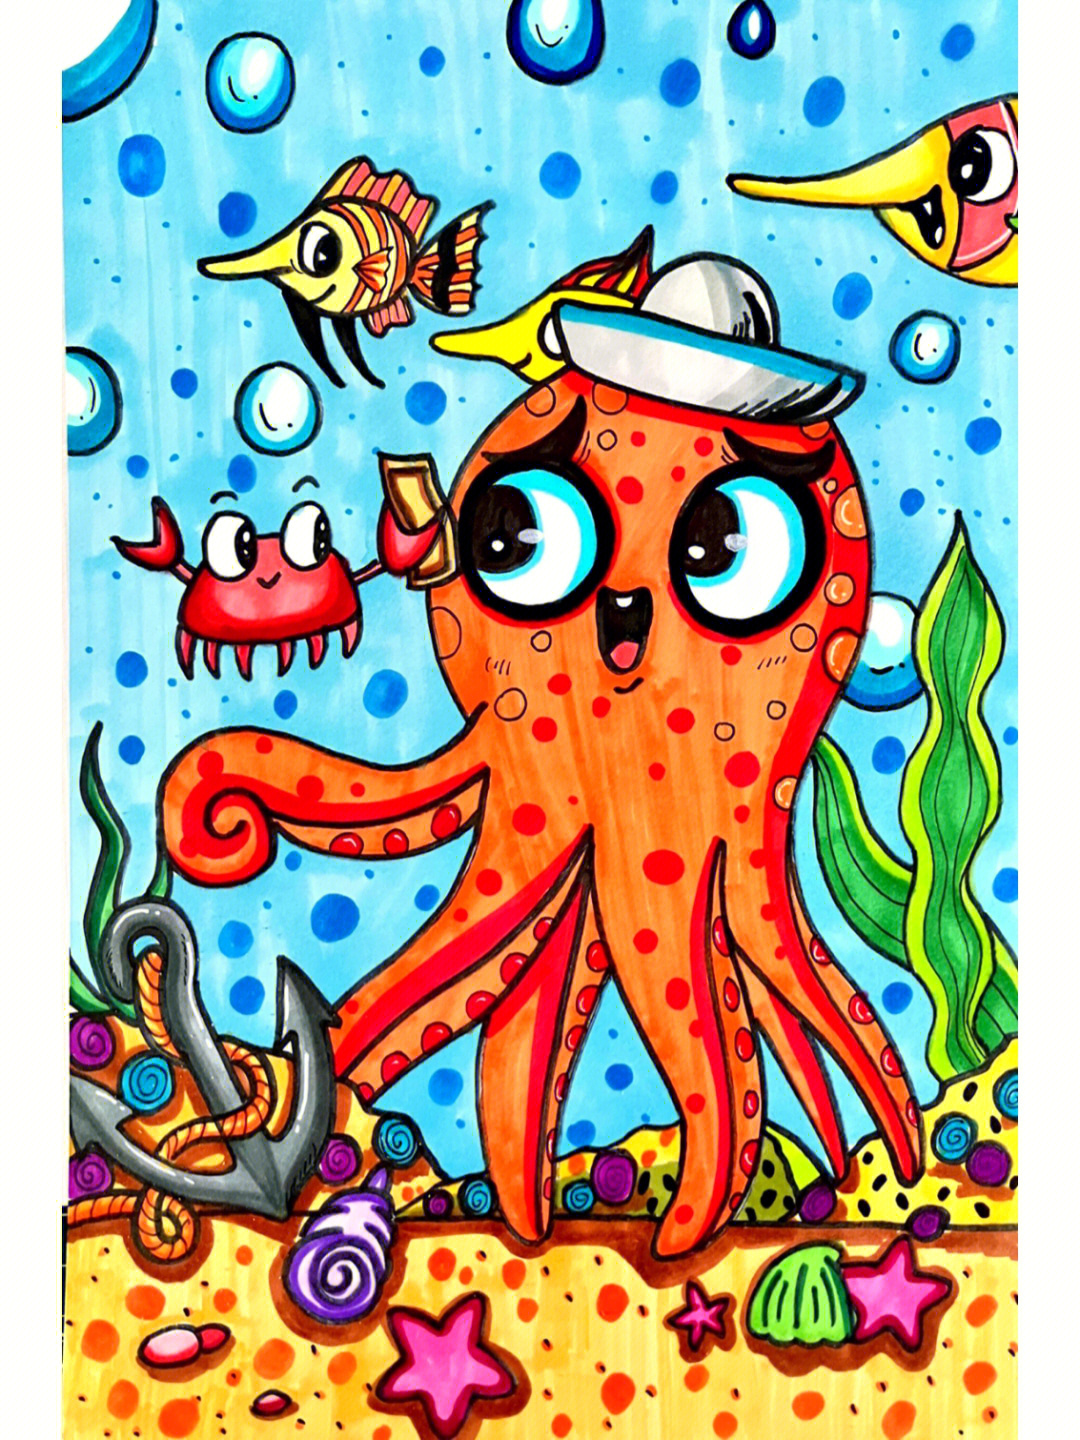 马克笔儿童画今日主题章鱼的世界